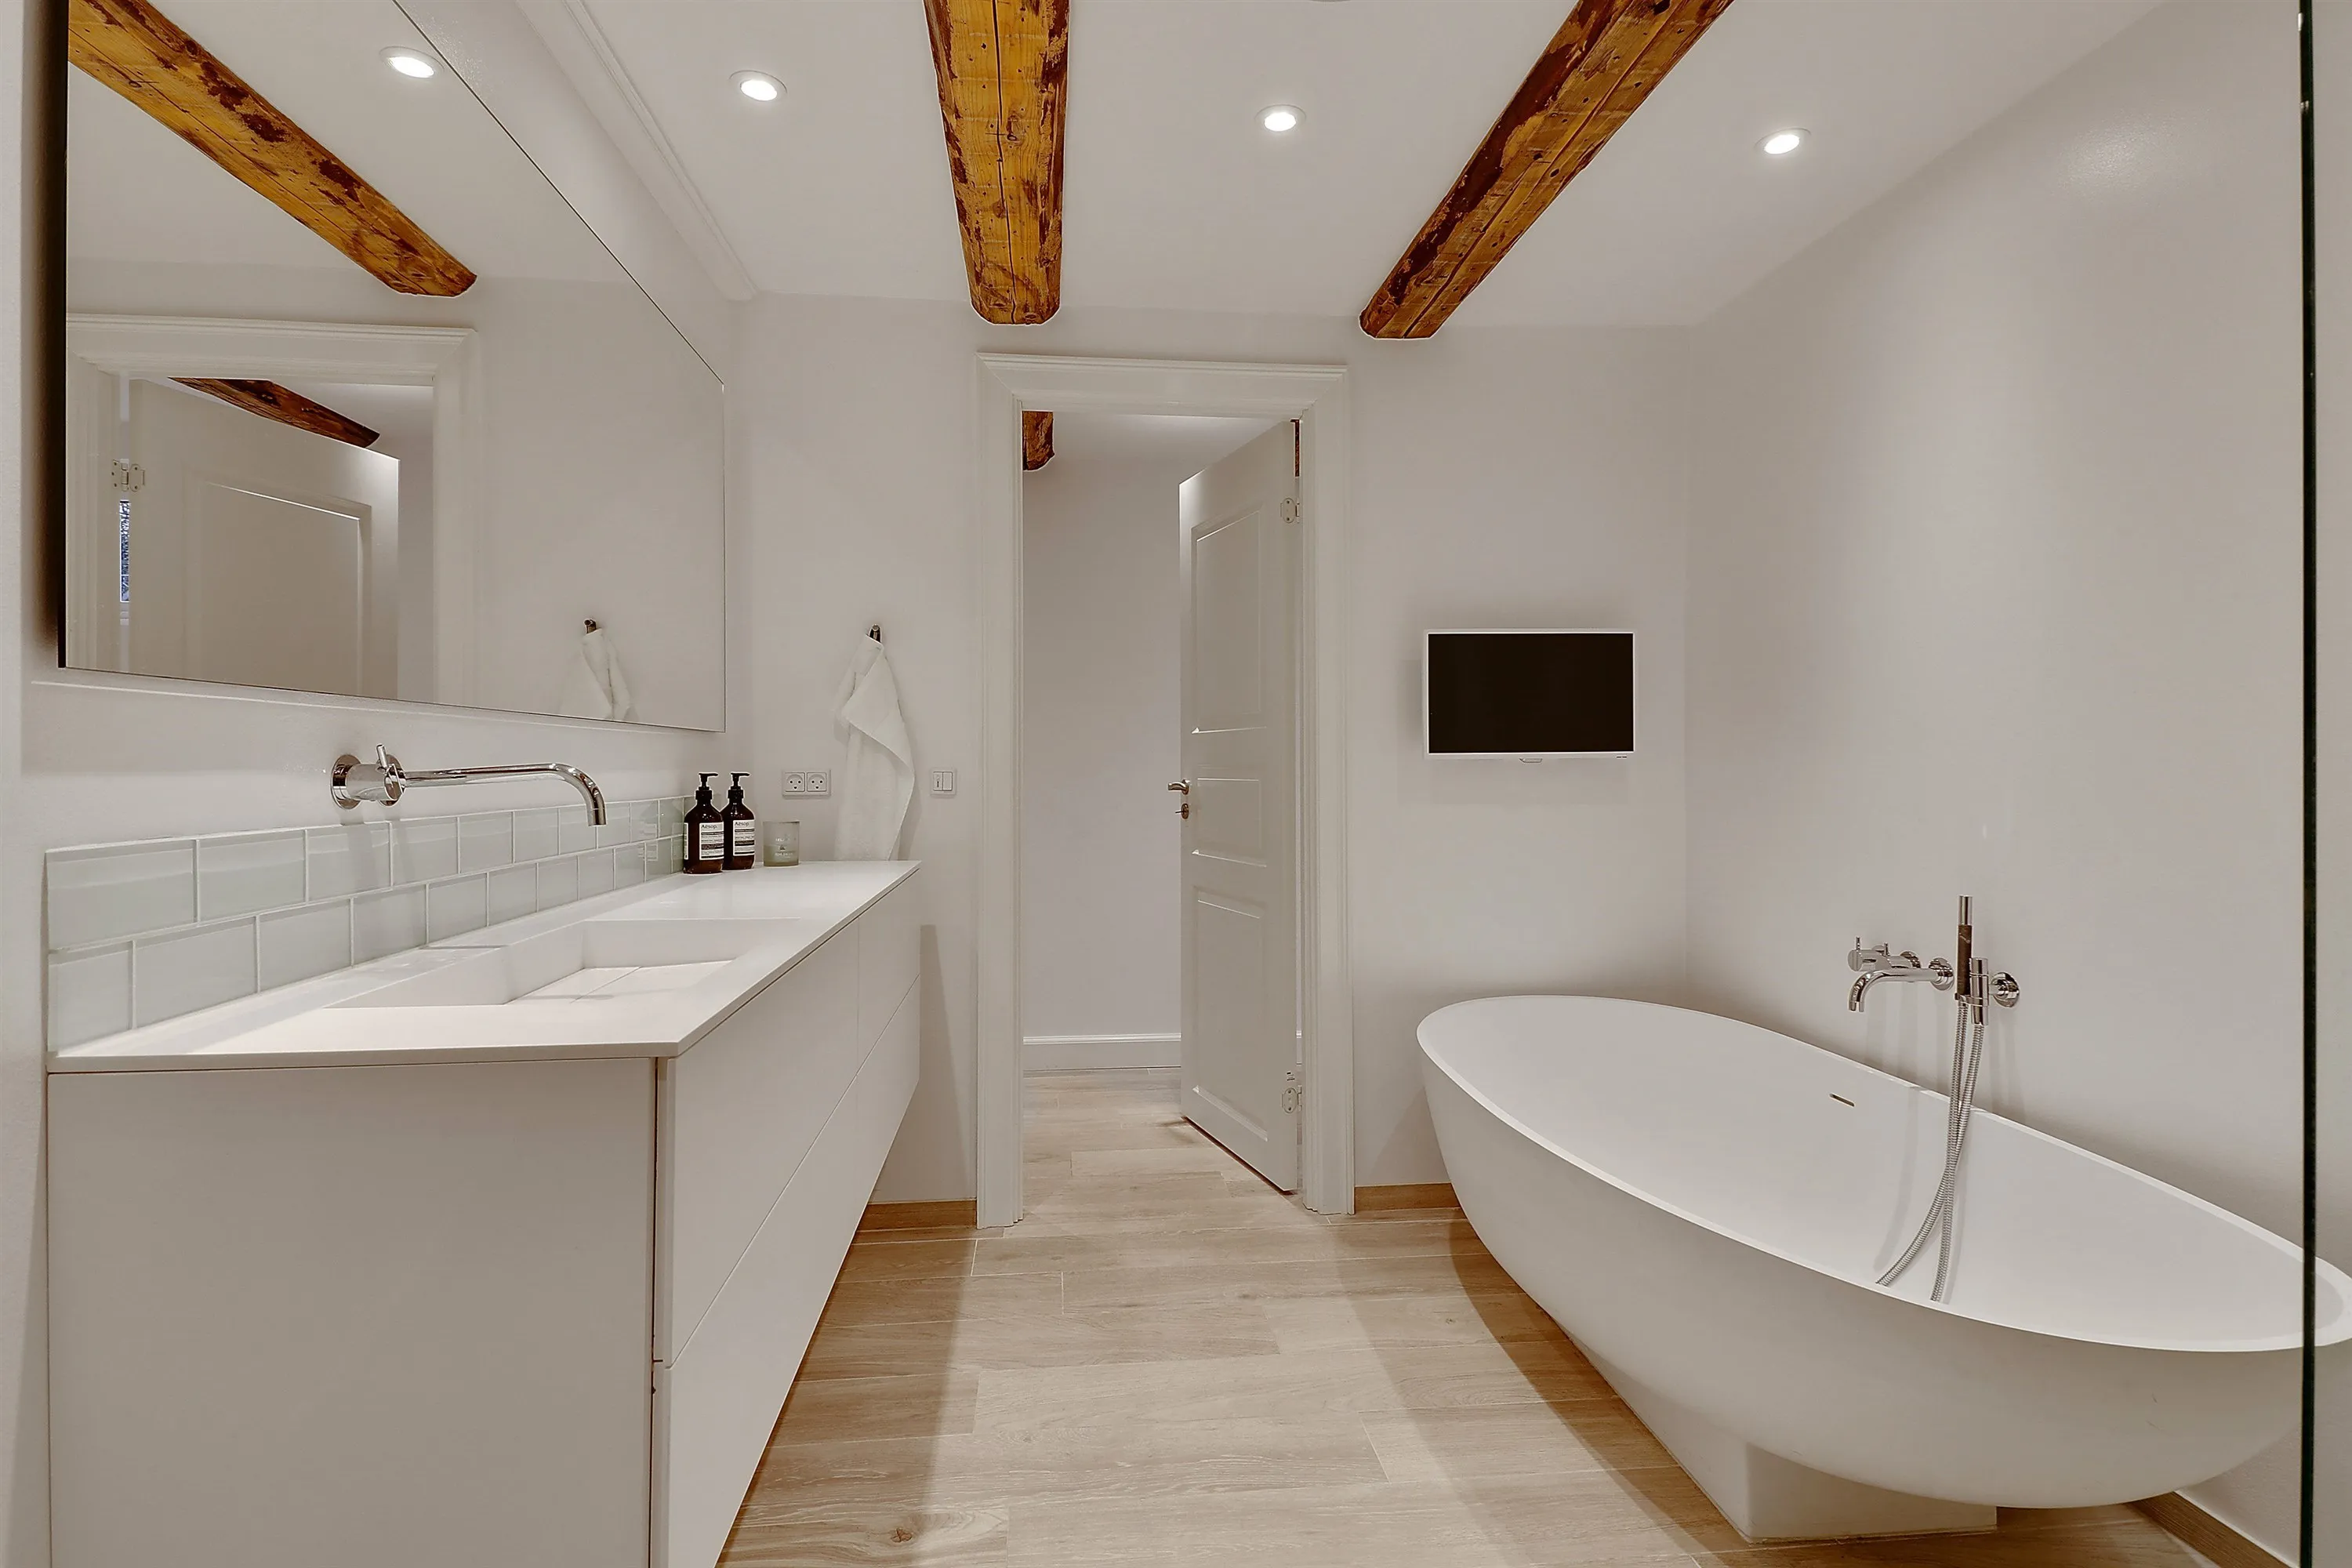 Nyt 9 m2 badeværelse med duravit badekar, vola1 ⇒ Håndværker.dk -  Håndværker.dk